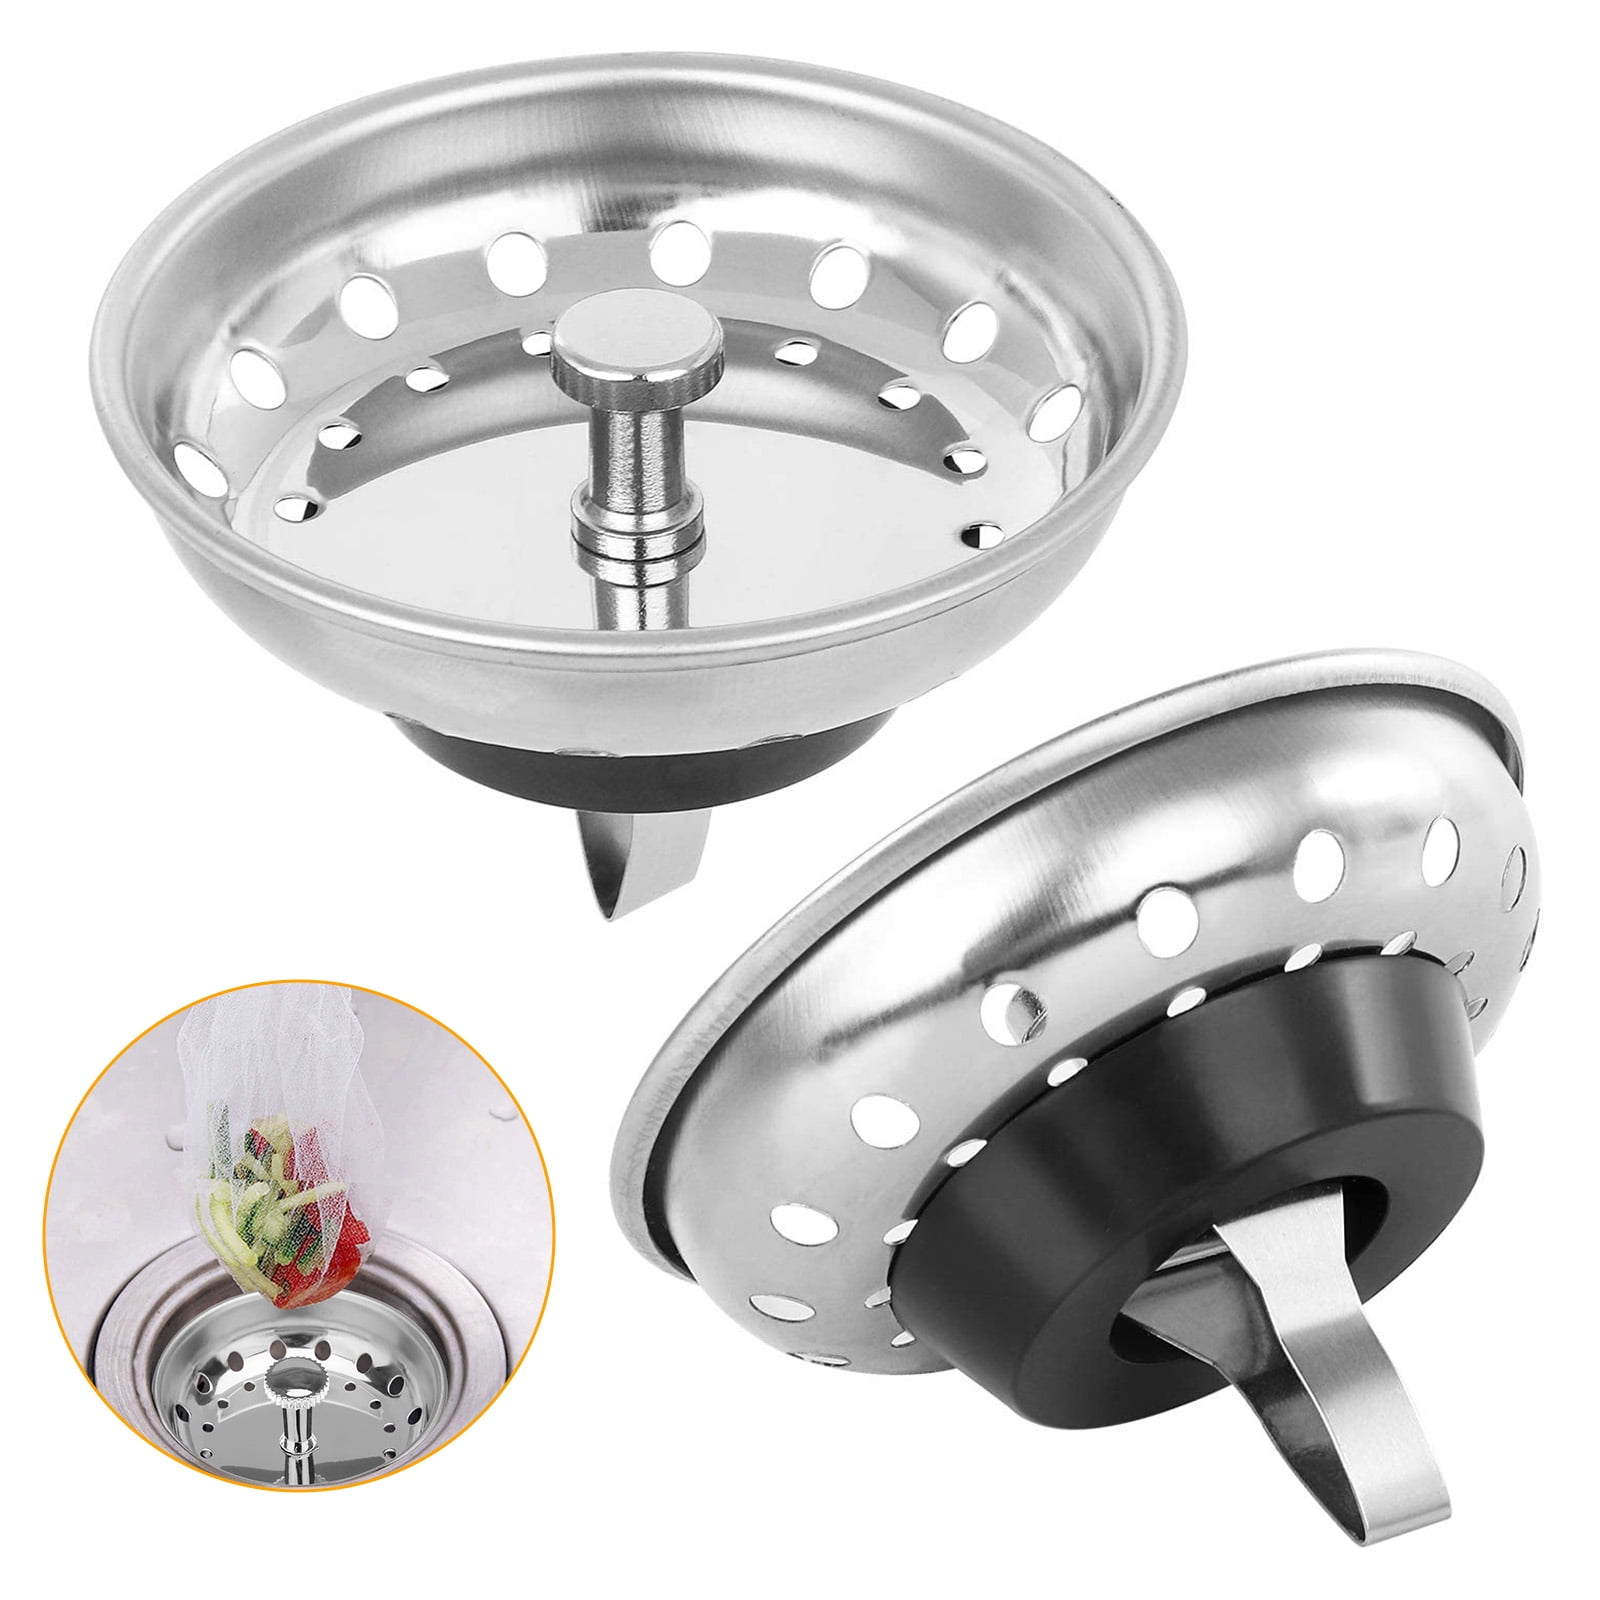 2x Kitchen Waste Stainless Steel Sink Strainer Plug Drain Filter Basket Drainer 